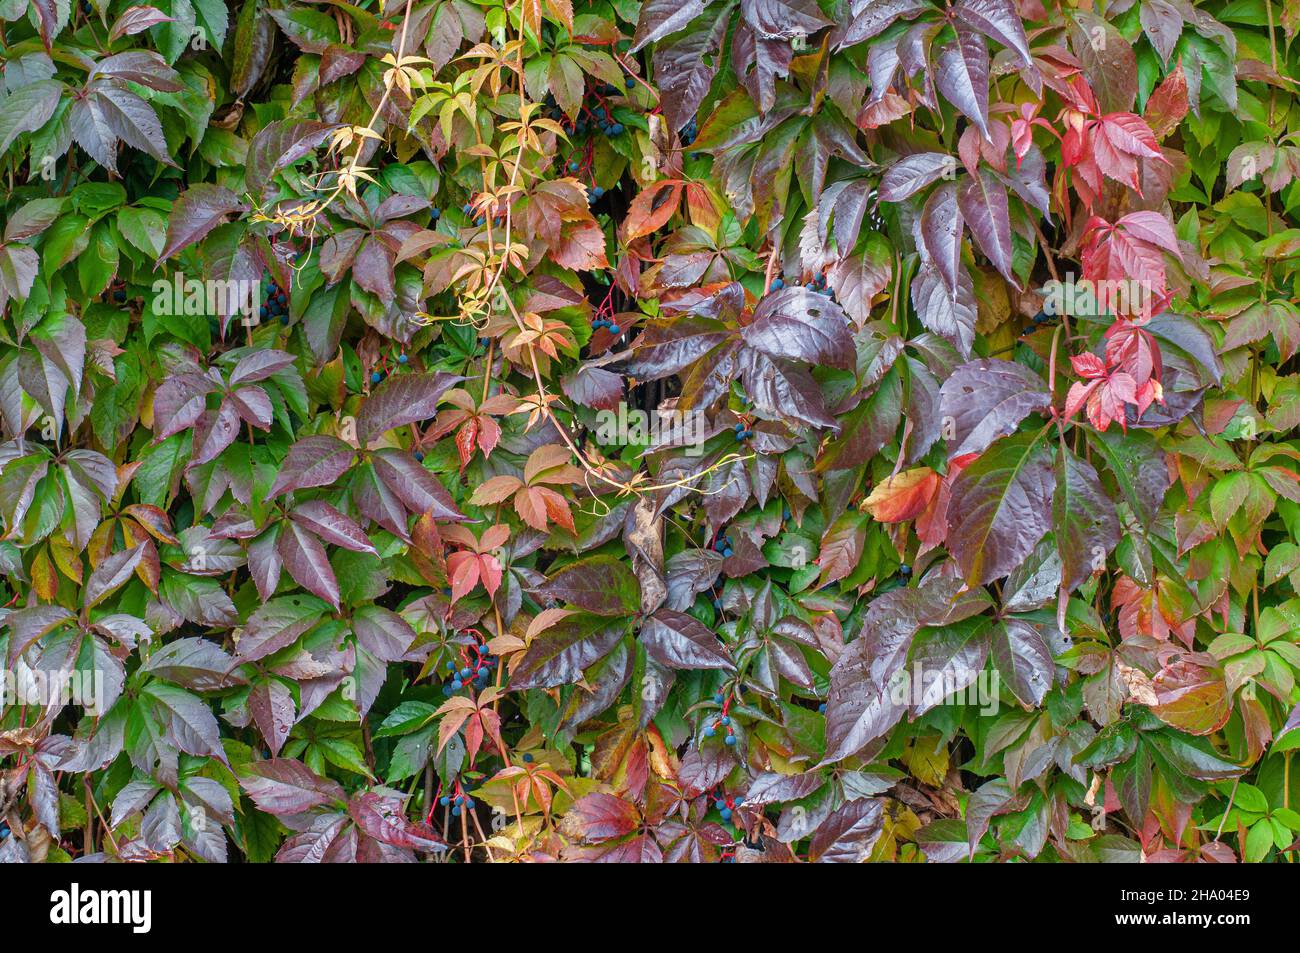 Colorful leaves of a Parthenocissus Quinquefolia vine plant in autumn Stock Photo